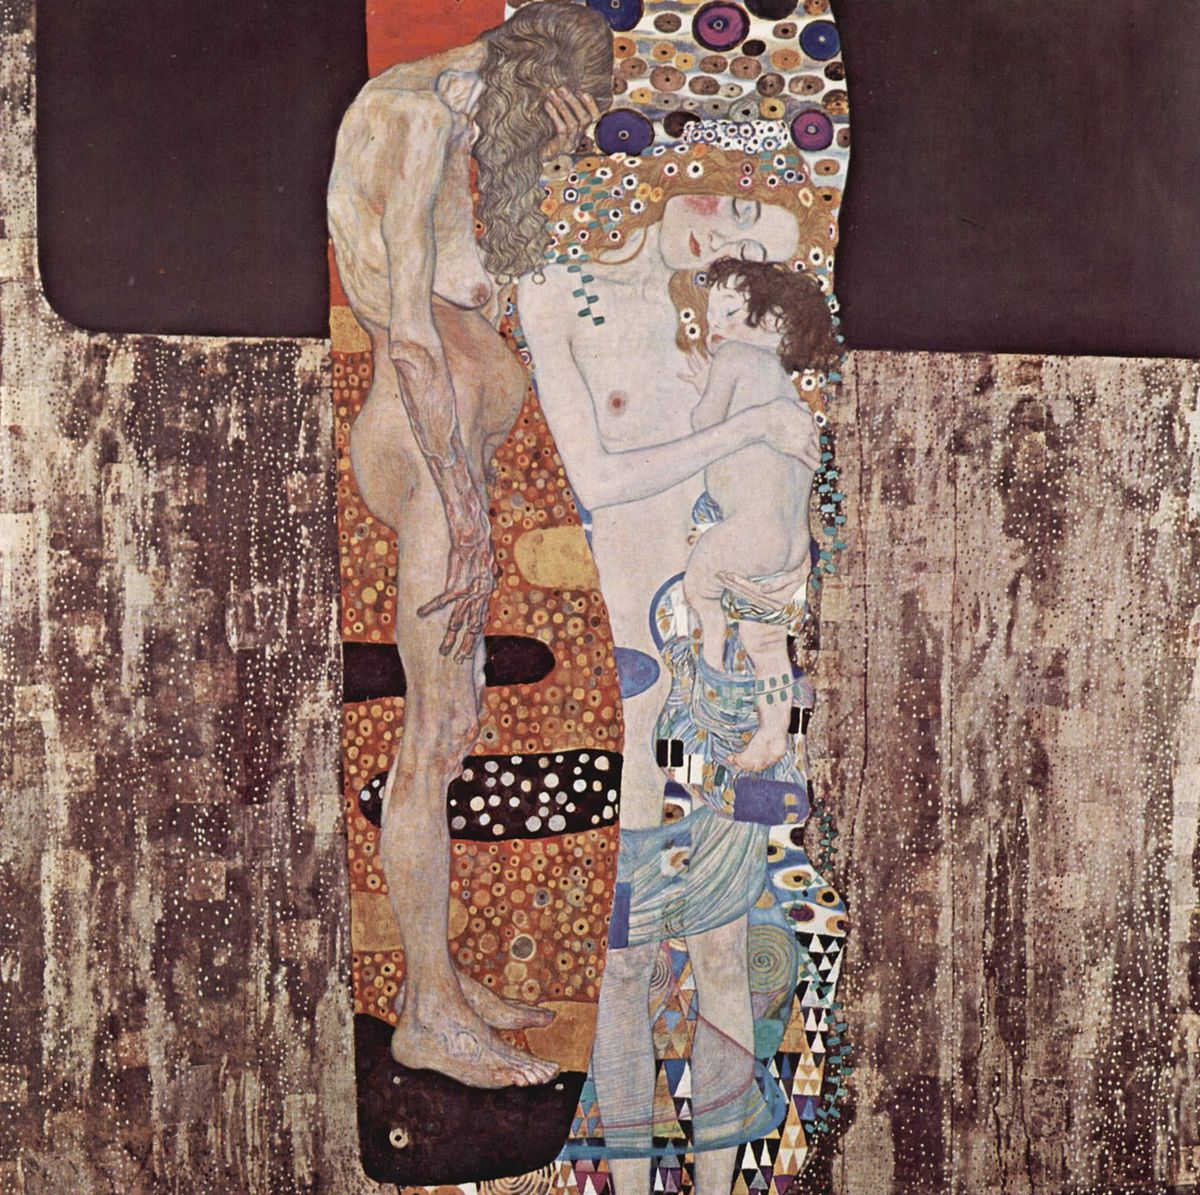 La generación mayor aislada y sufriente: así la presenta Klimt y su época